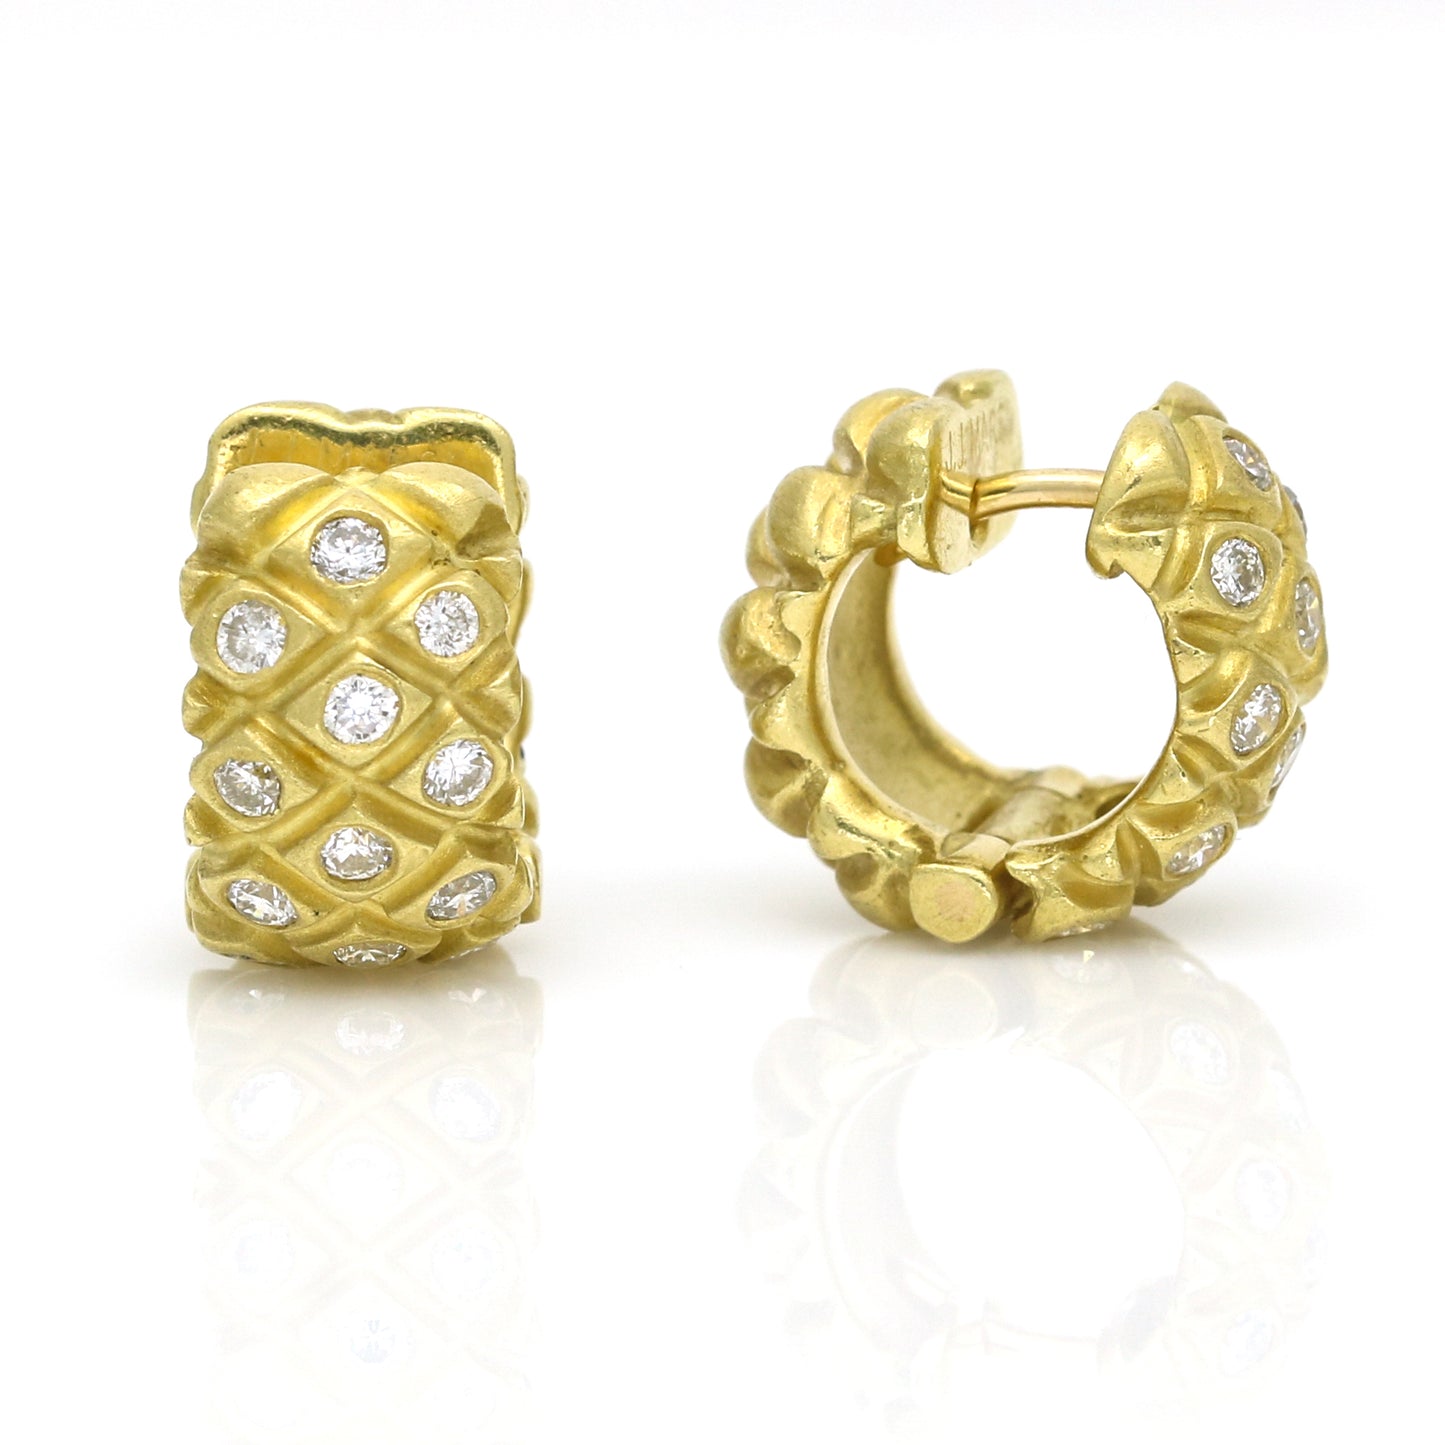 J.J. Marco 18K Yellow Gold Pineapple Pattern Hoop Earrings with Diamonds